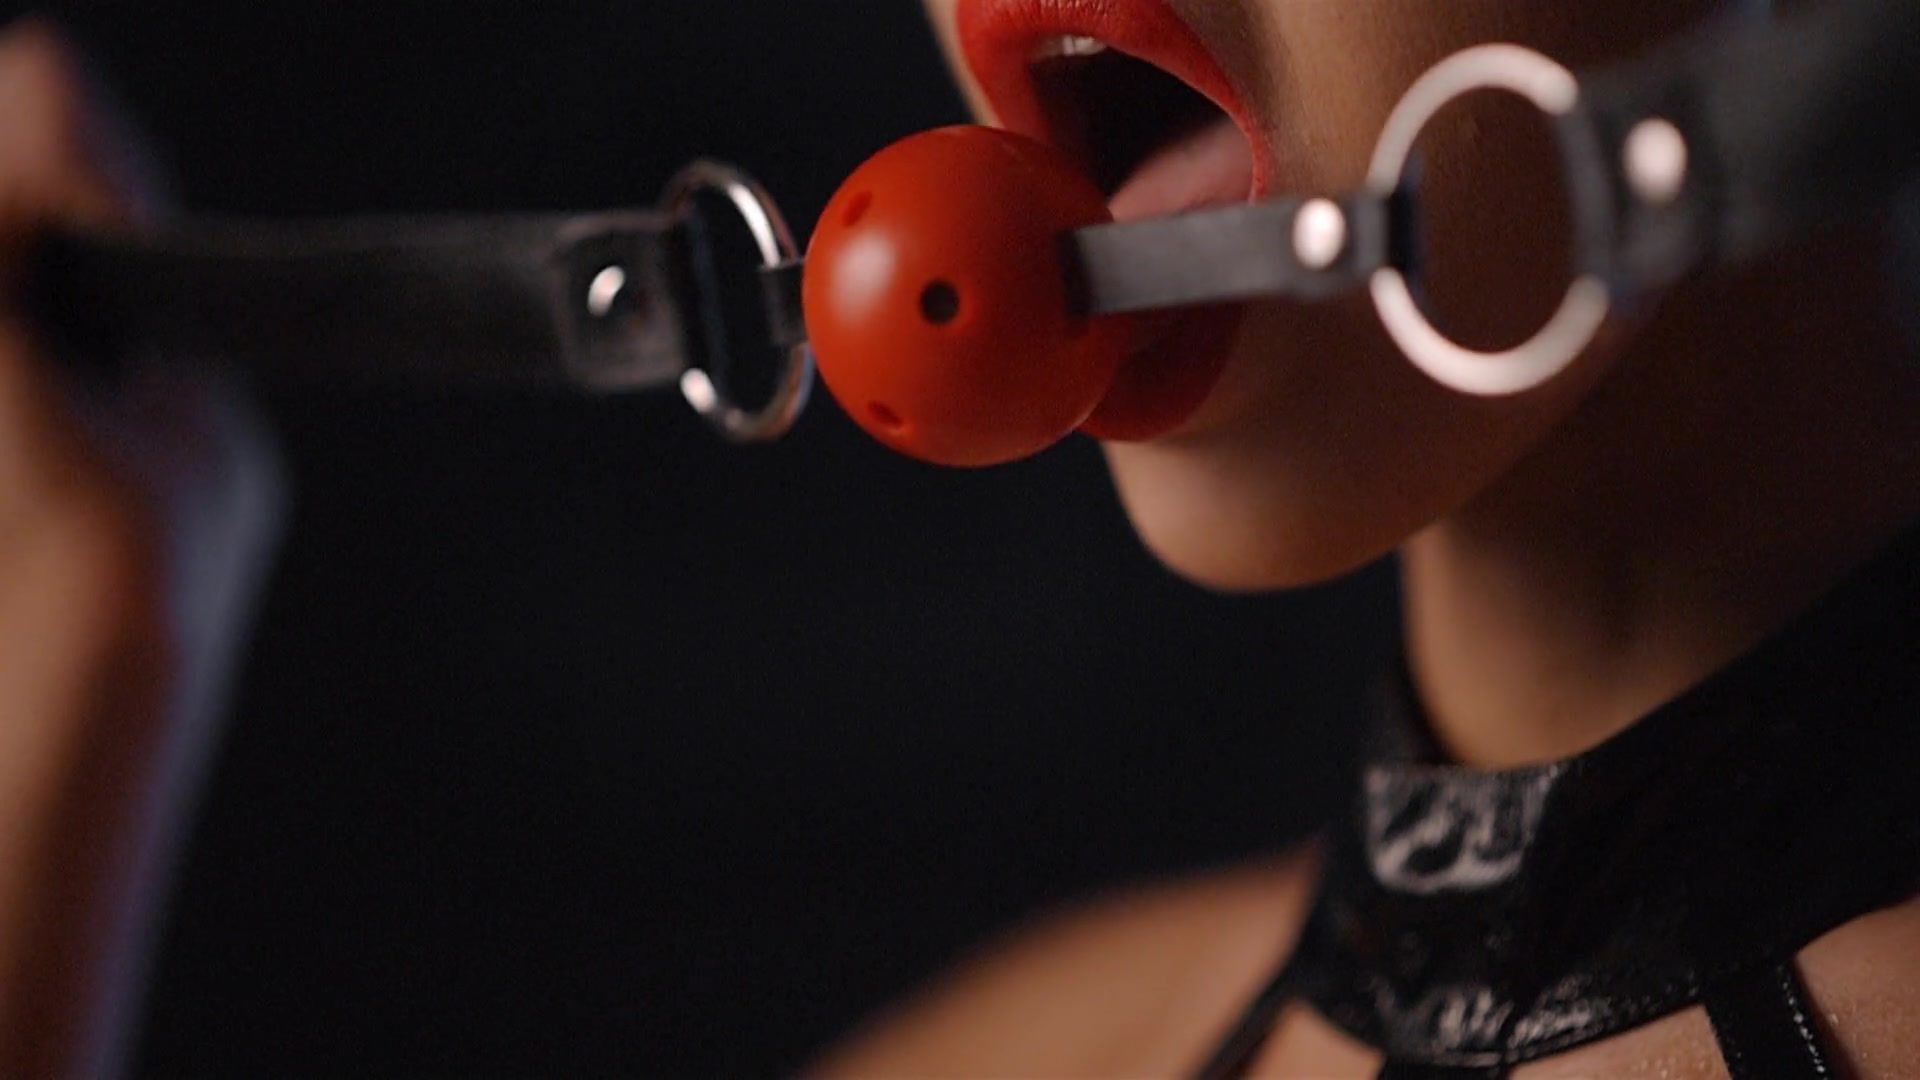 Ecchi Erotic Music Clip - Close-up Model Body (Mainstream Ero Video) BestSexWebcam - 1